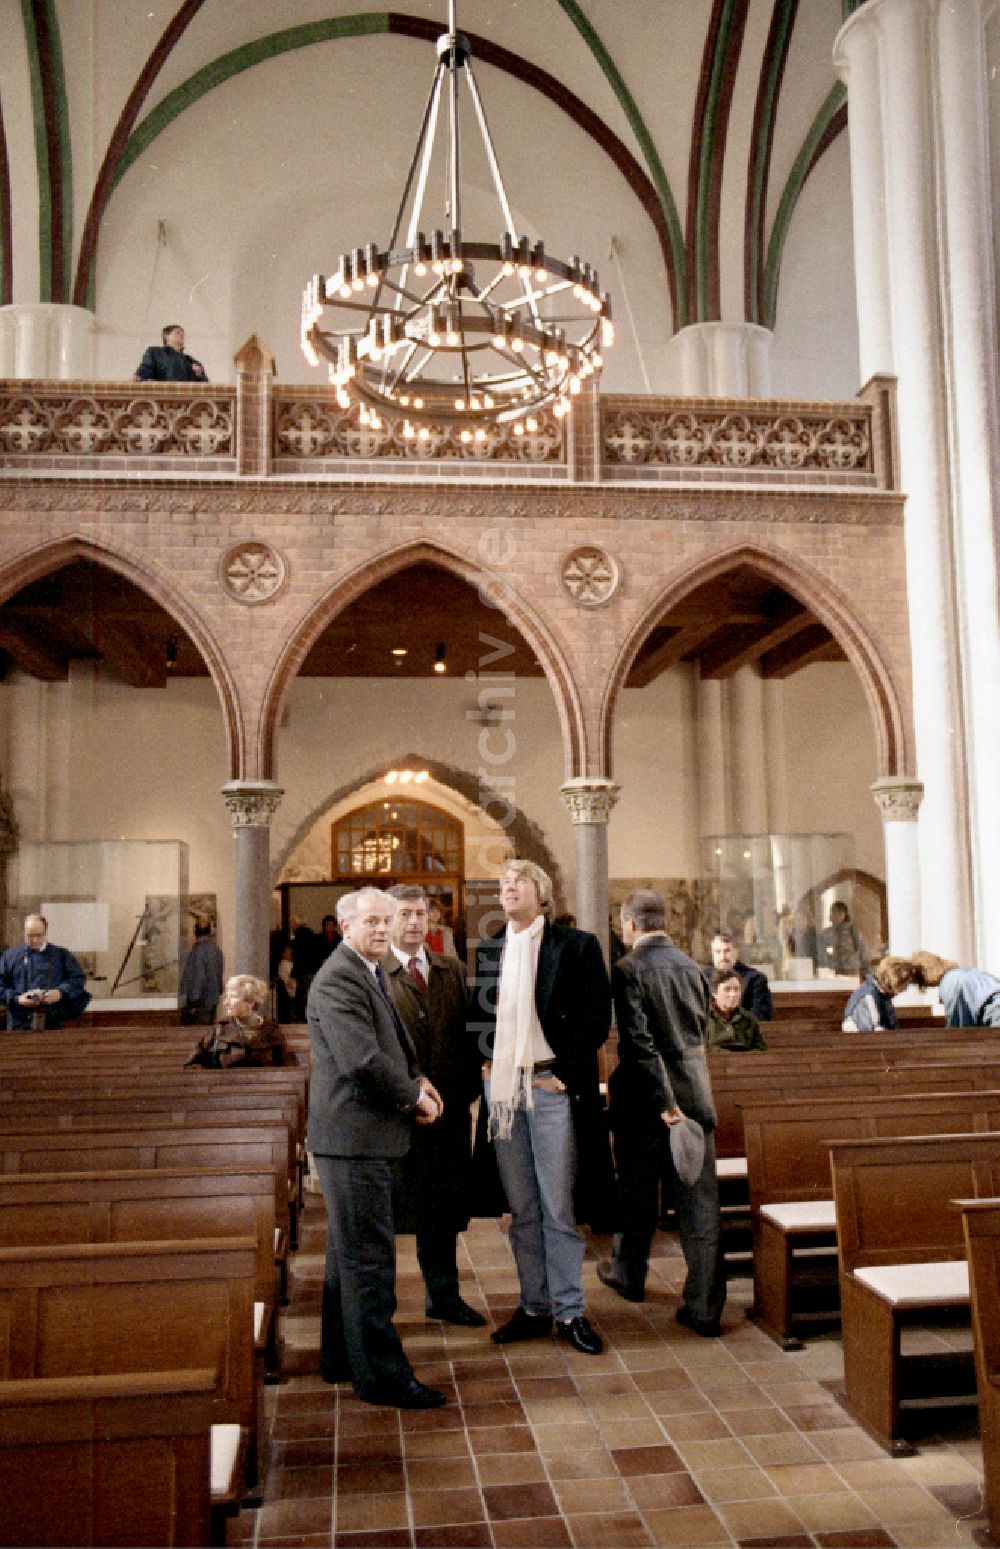 DDR-Bildarchiv: Berlin - Schlagersänger Roland Kaiser besucht die Nikolaikirche in Berlin auf dem Gebiet der ehemaligen DDR, Deutsche Demokratische Republik